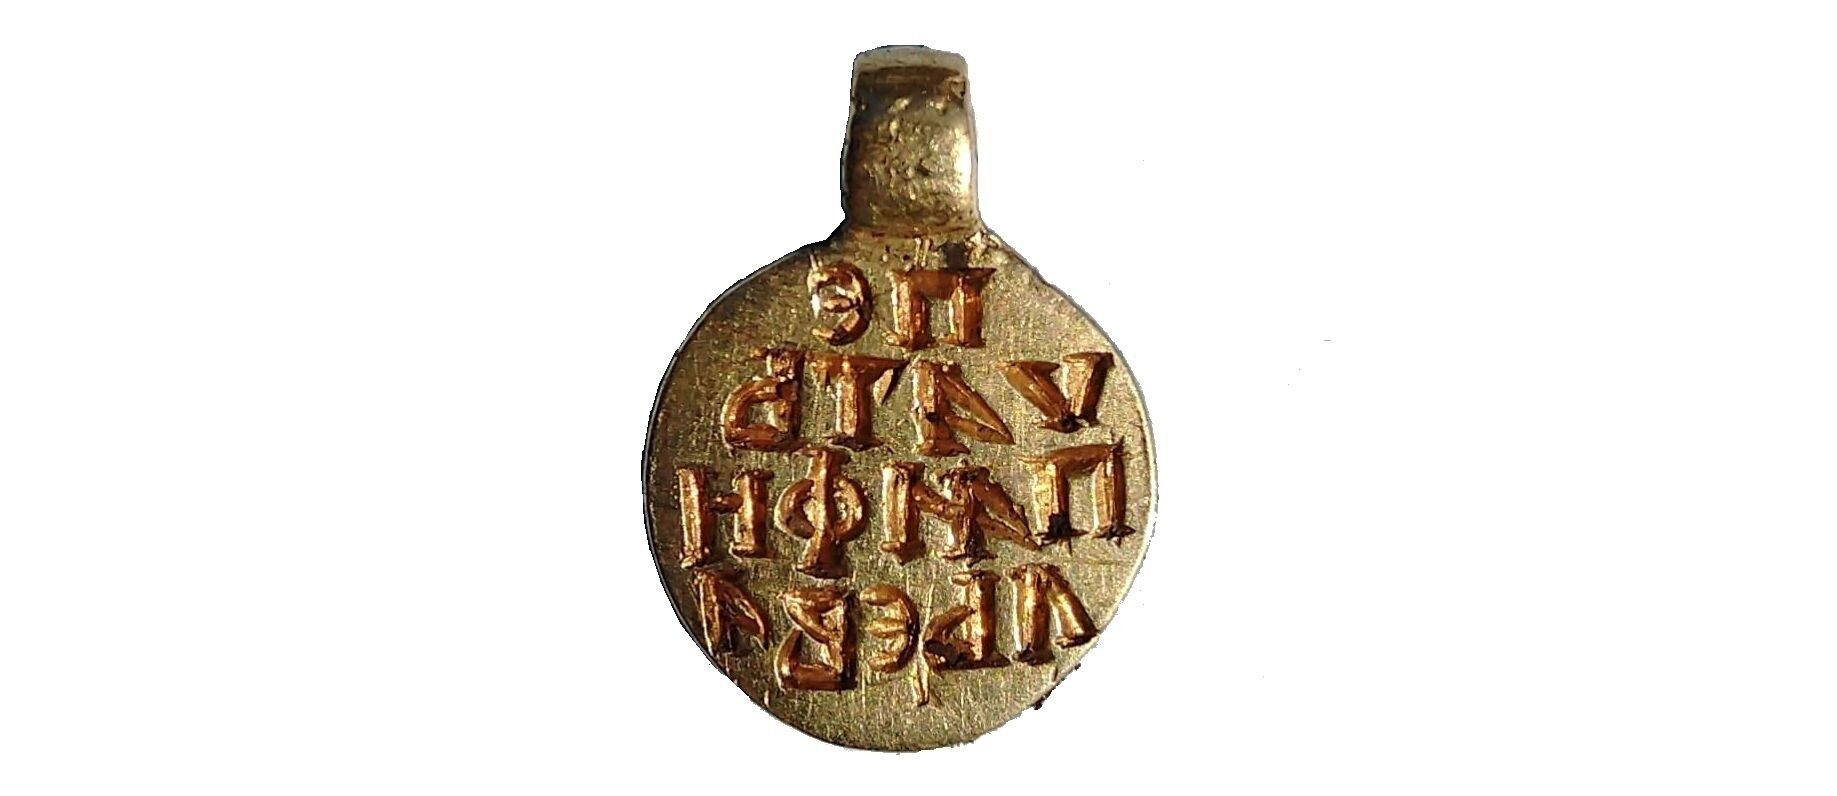 Археологи обнаружили в Великом Новгороде уникальную золотую печать XV века